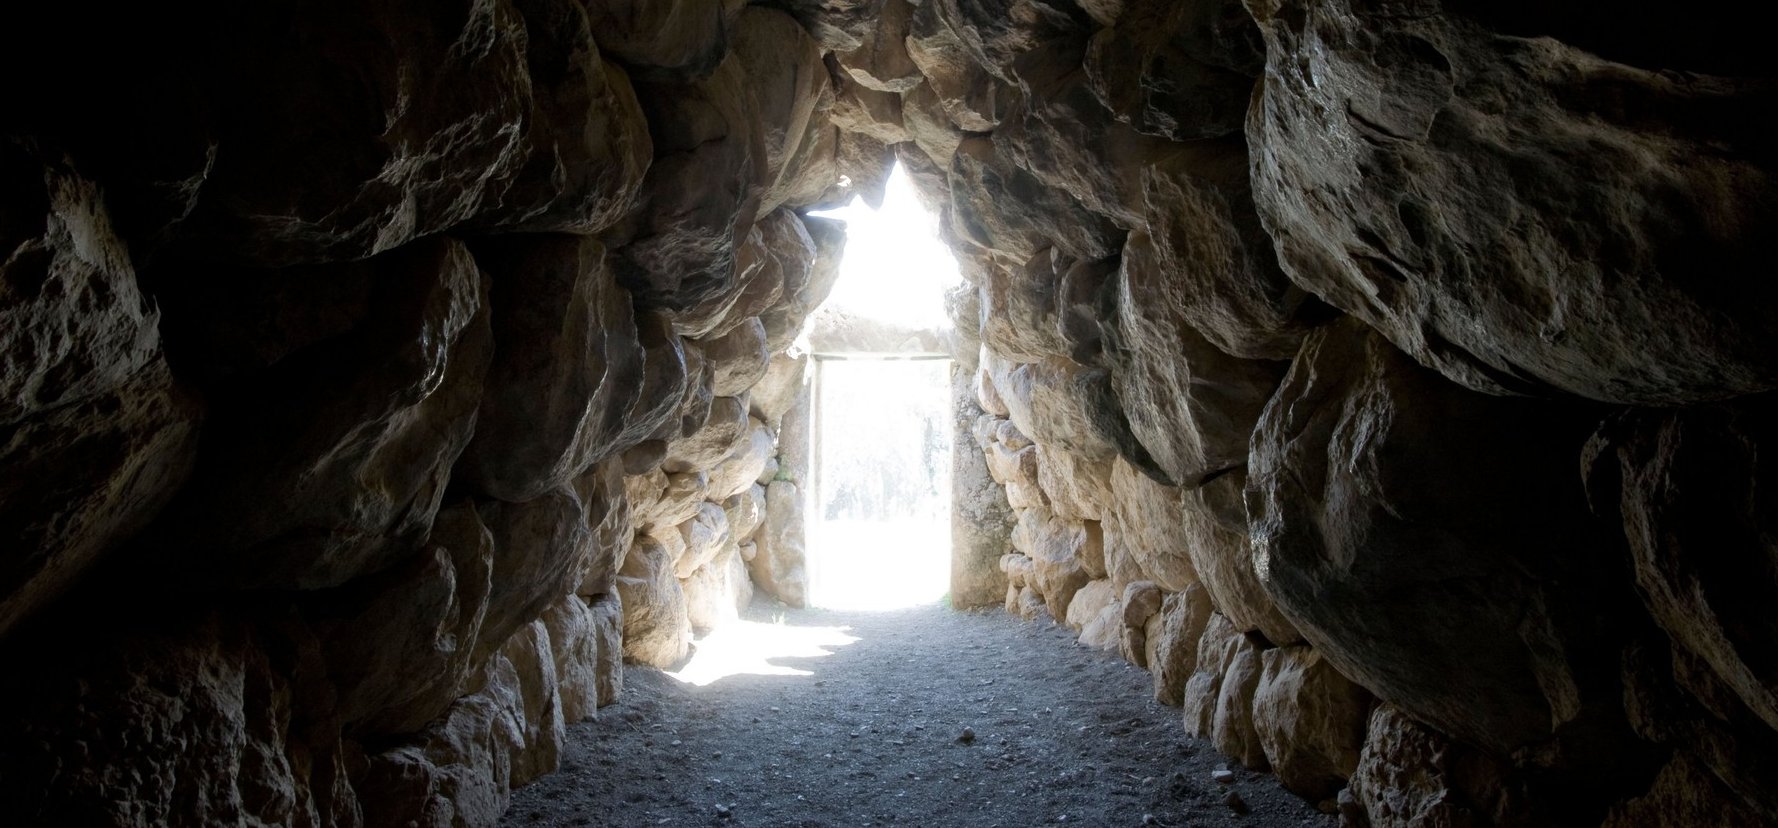 A régészek besétáltak egy ősi alagútba, ahol döbbenetes felfedezés várta őket